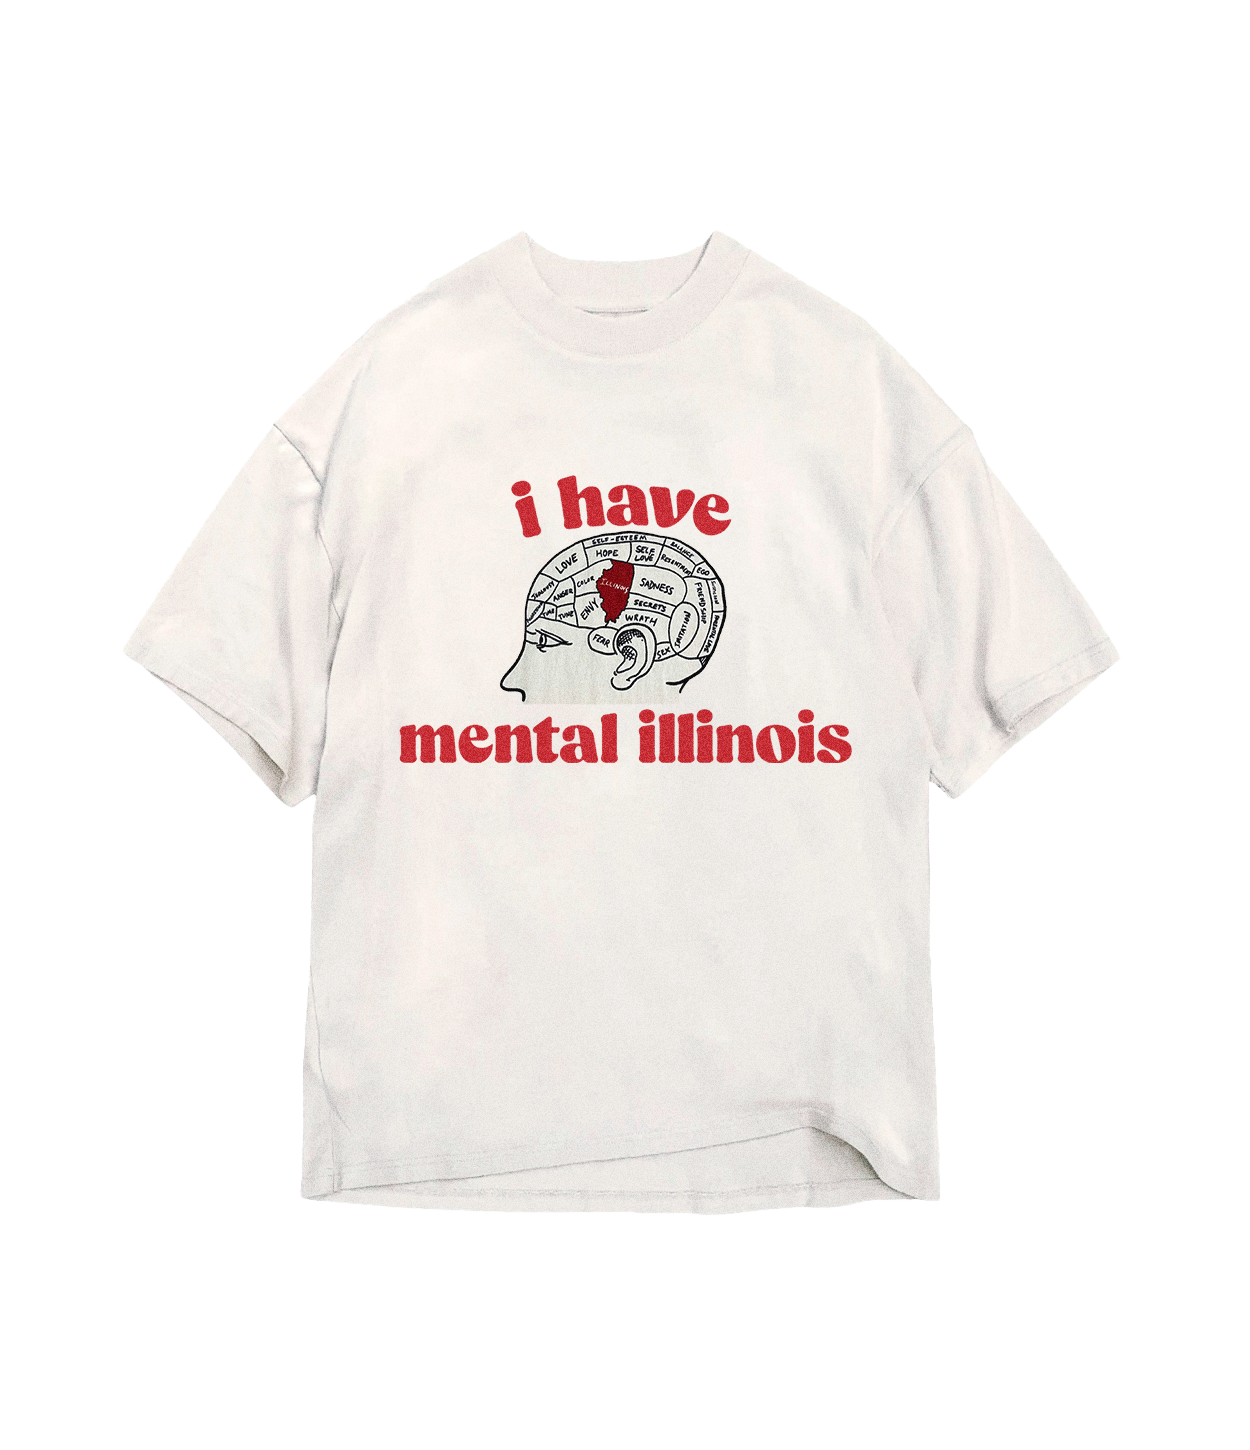 Mental Illinois – stoopidtees